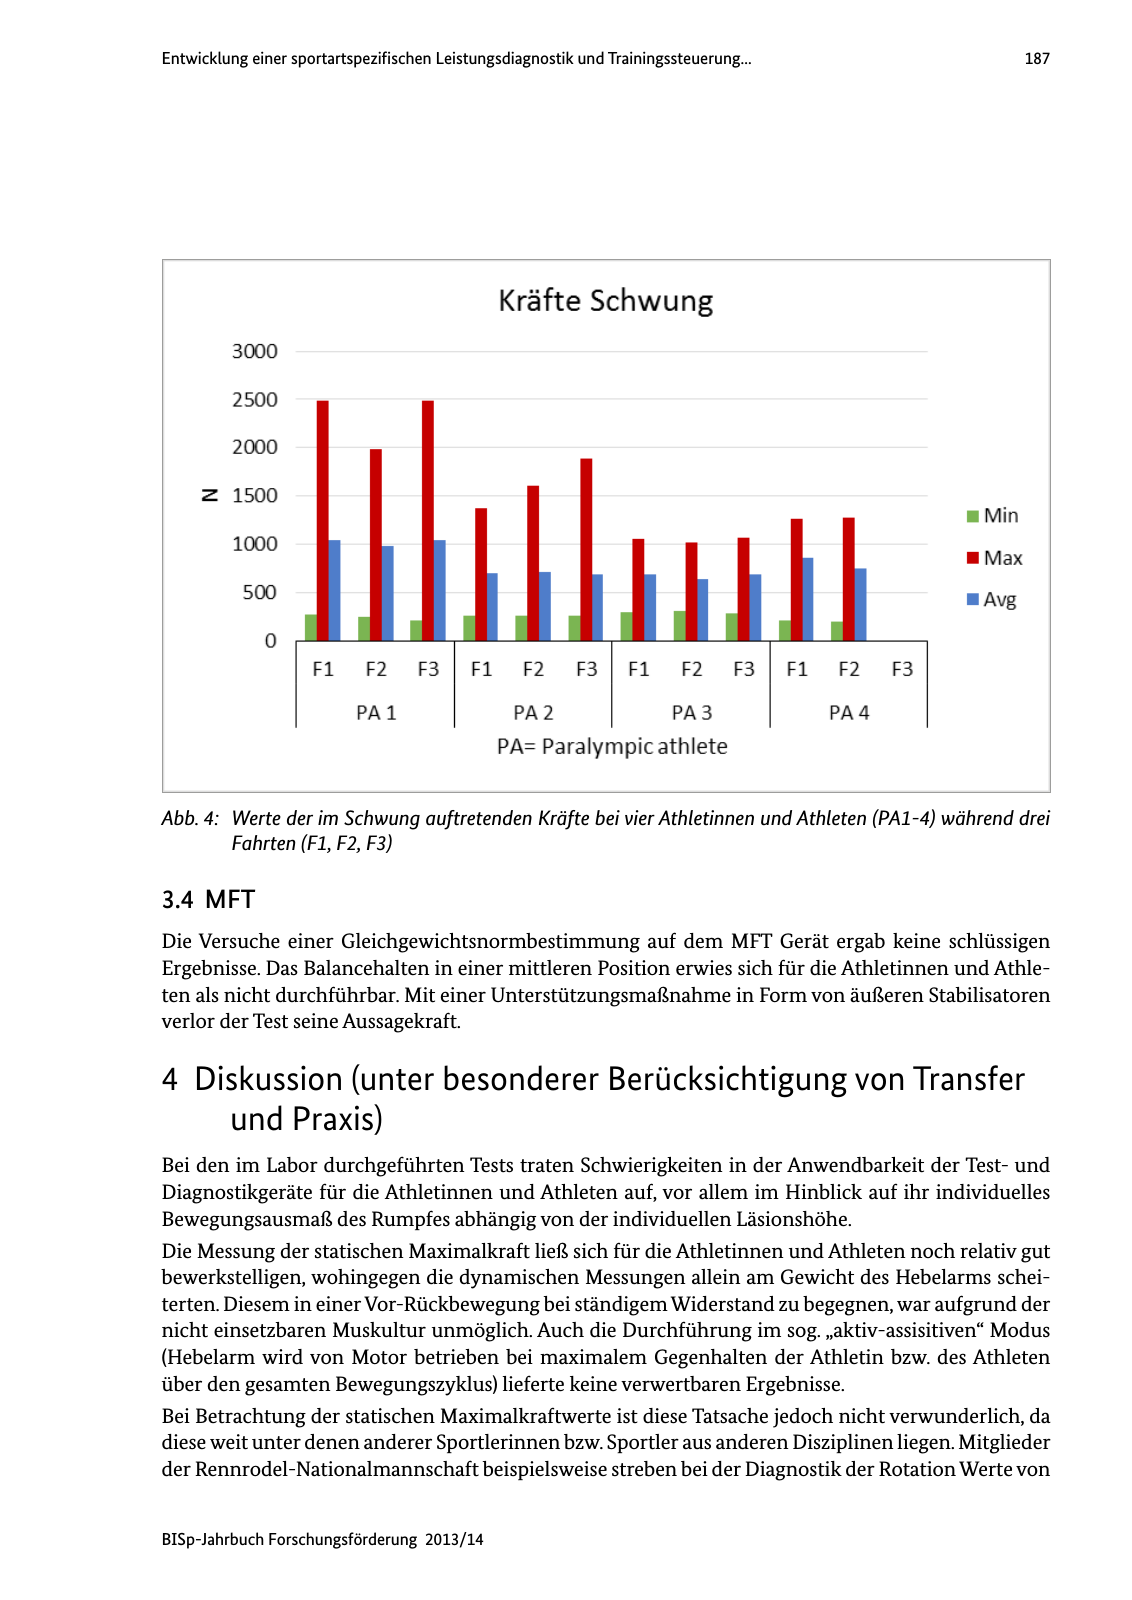 Vorschau BISp-Jahrbuch Forschungsförderung 2013/14 Seite 188